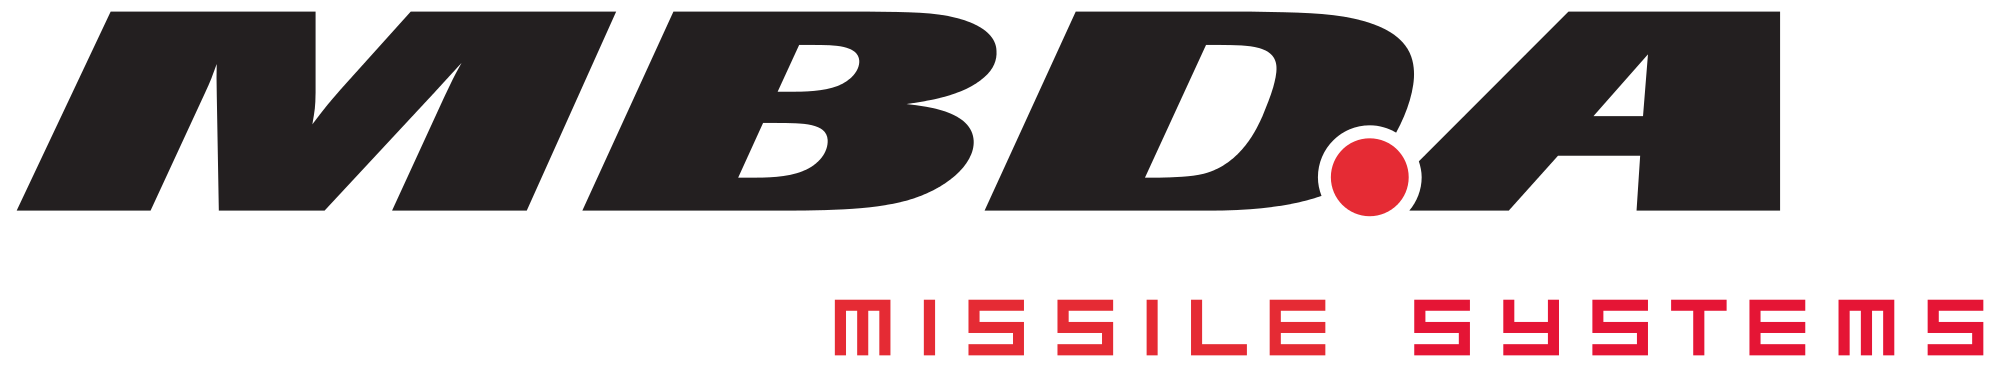 MBDA Missile System logo